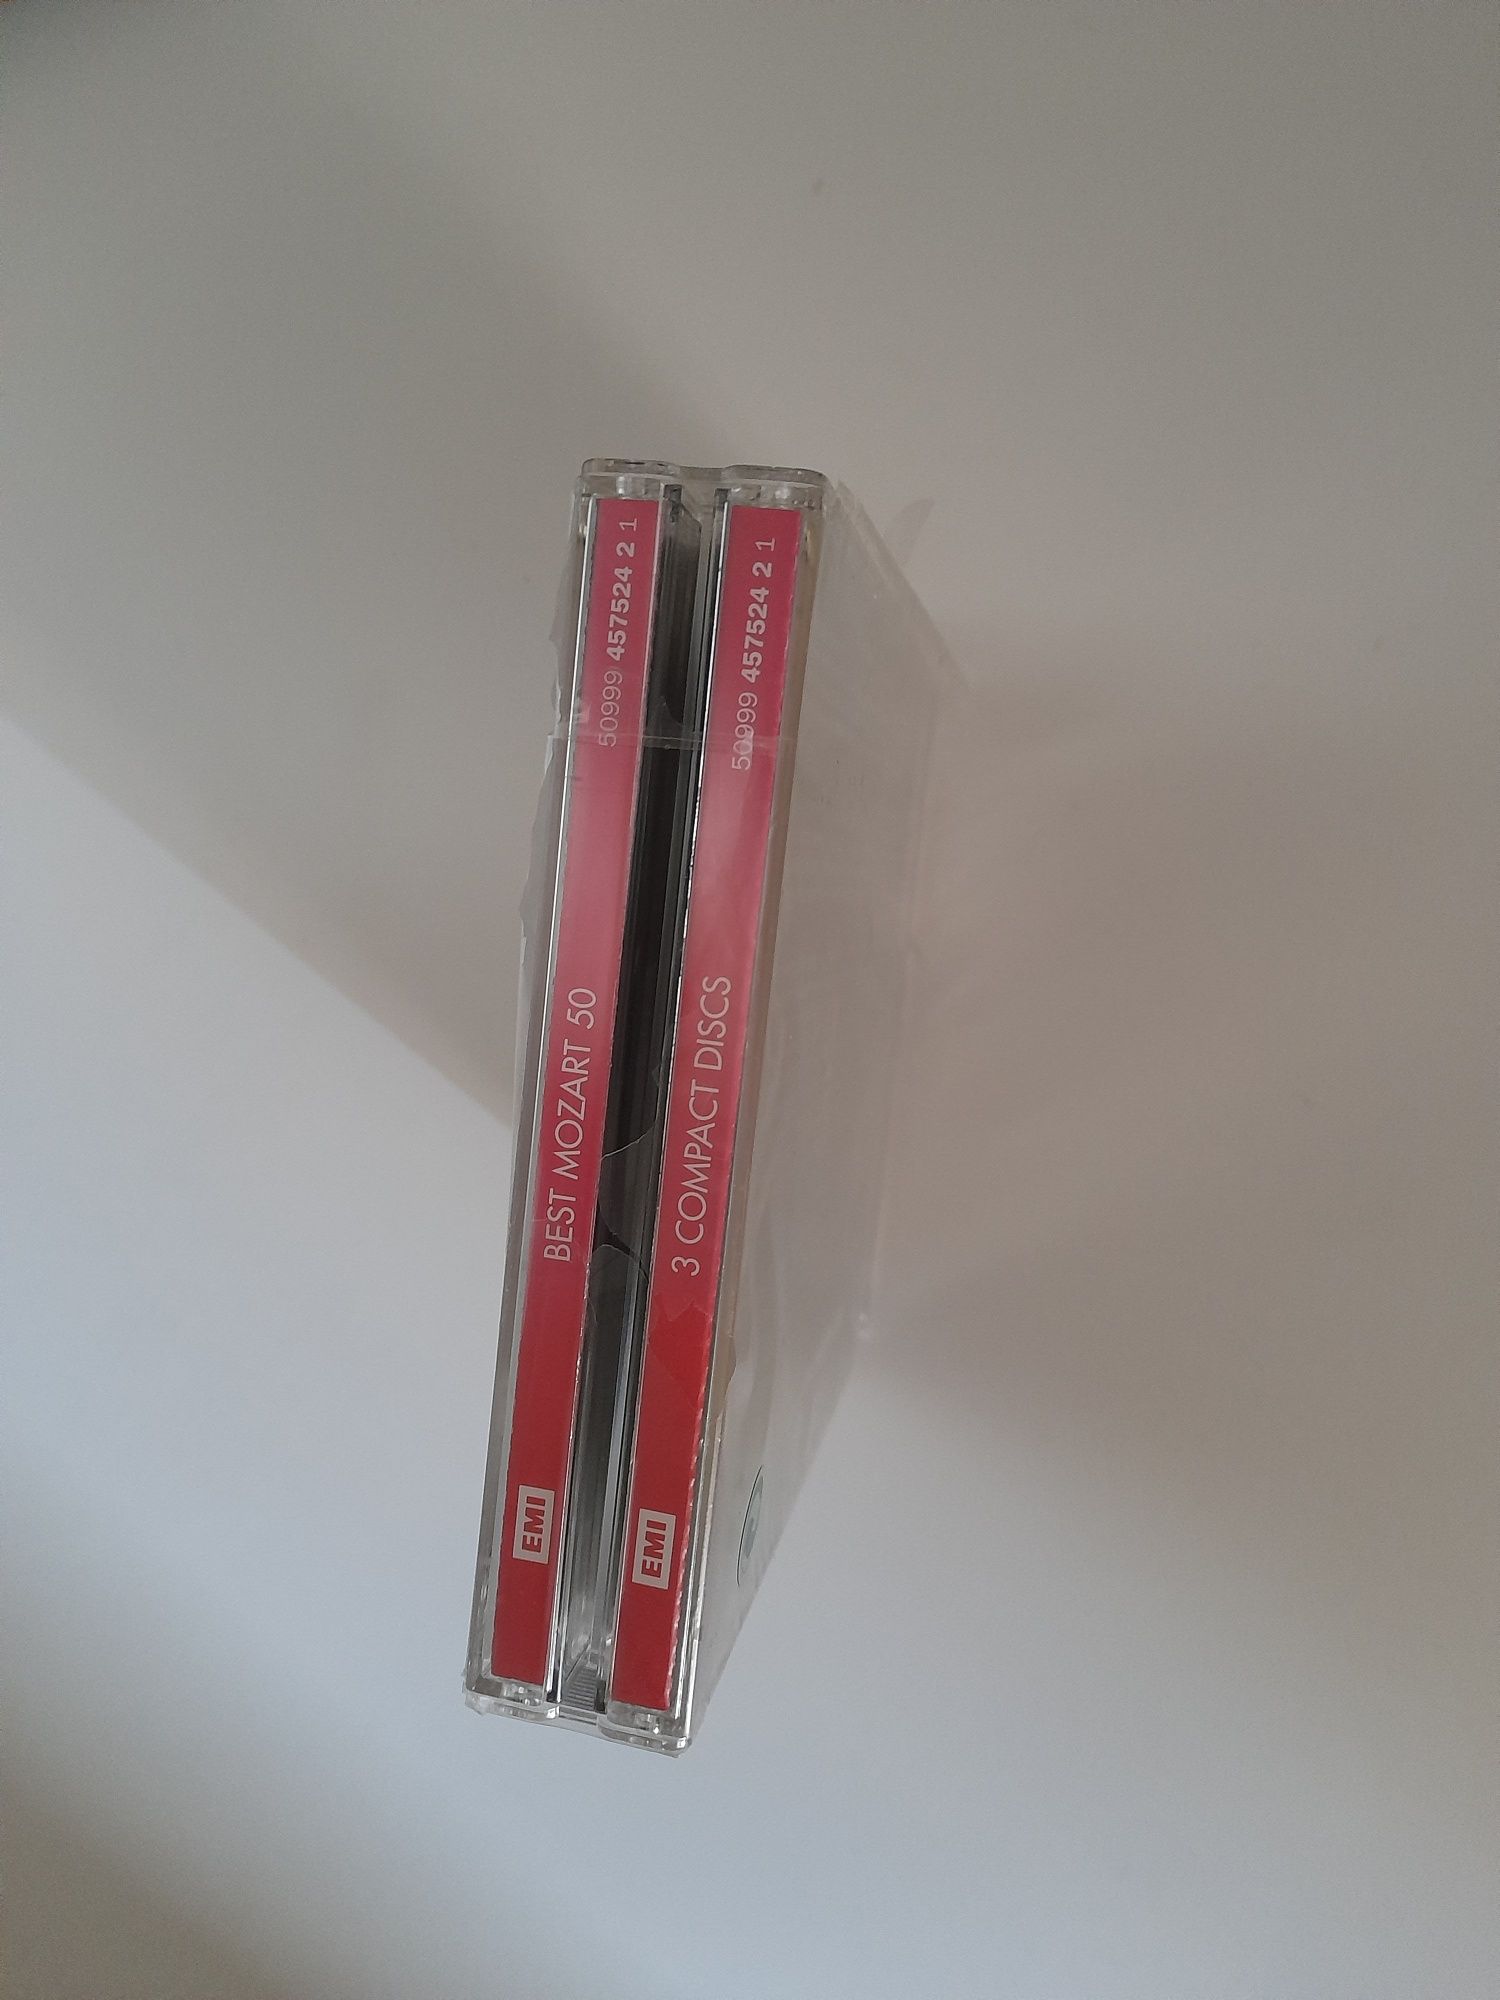 CD Mozart - 3 CDs, 50 músicas